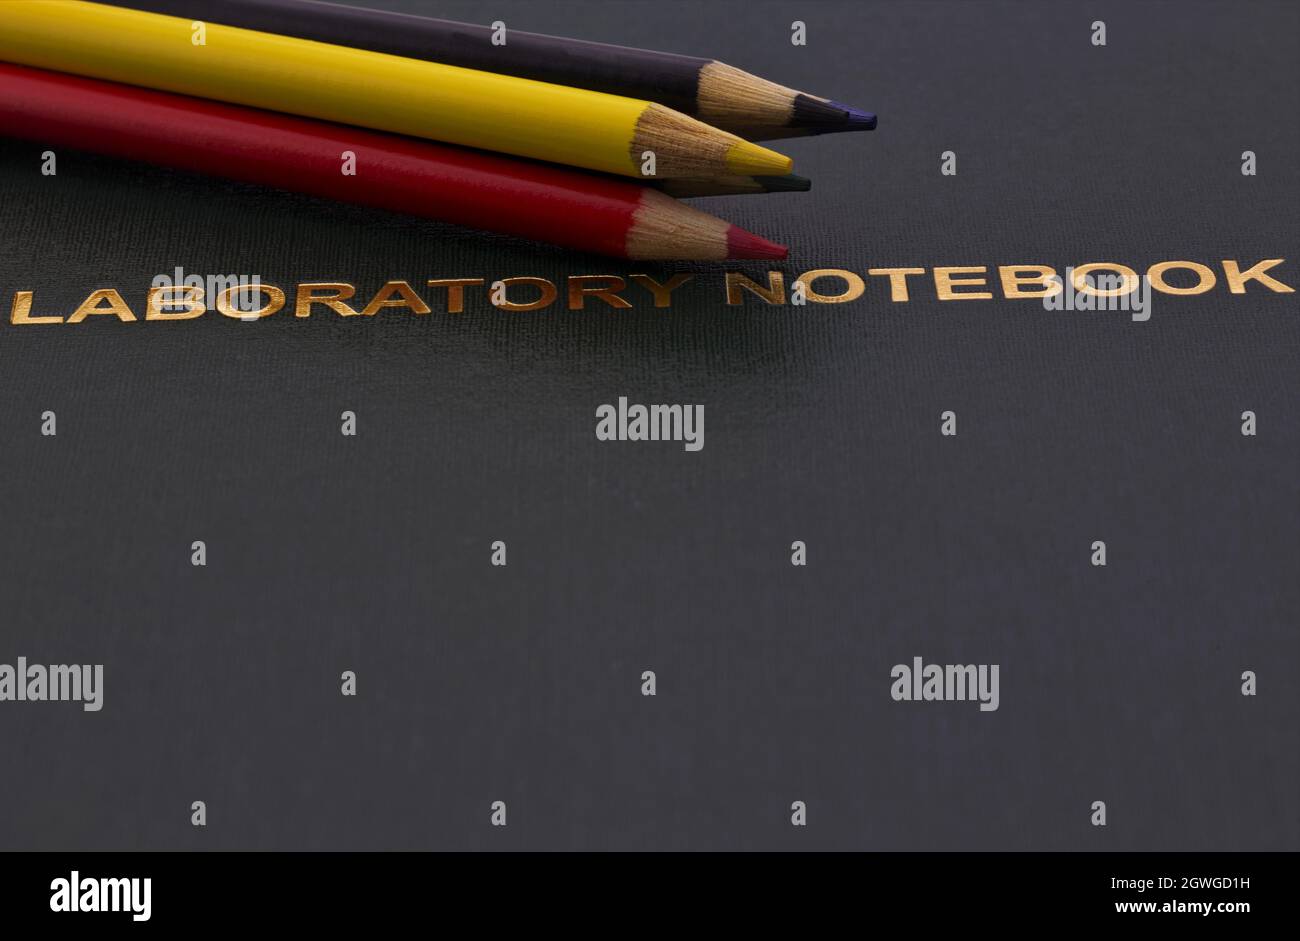 Buntstifte, die auf goldfarbenen, dunklen wissenschaftlichen Labornotizbüchern angebracht sind, spiegeln die Betonung von Universität, Forschung und Bildung auf sorgfältiger Notatio wider Stockfoto